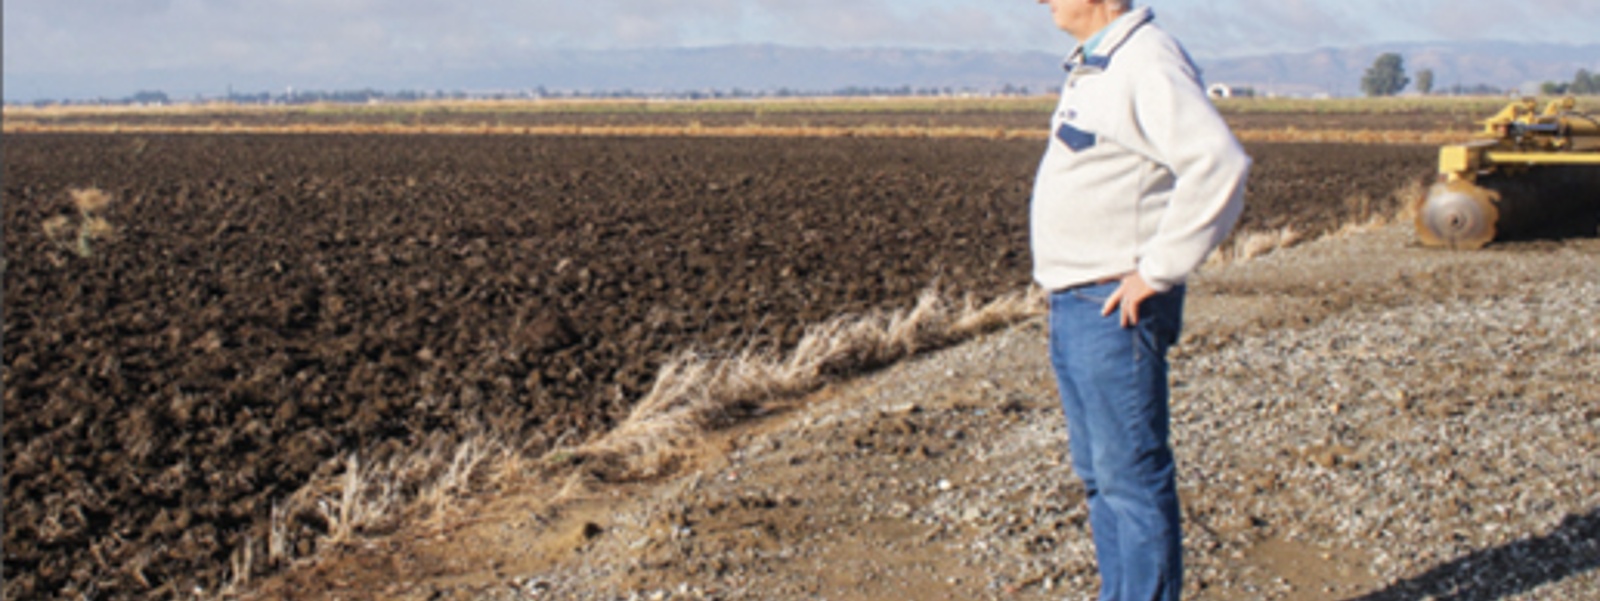 Drought impacts hurt farm communities